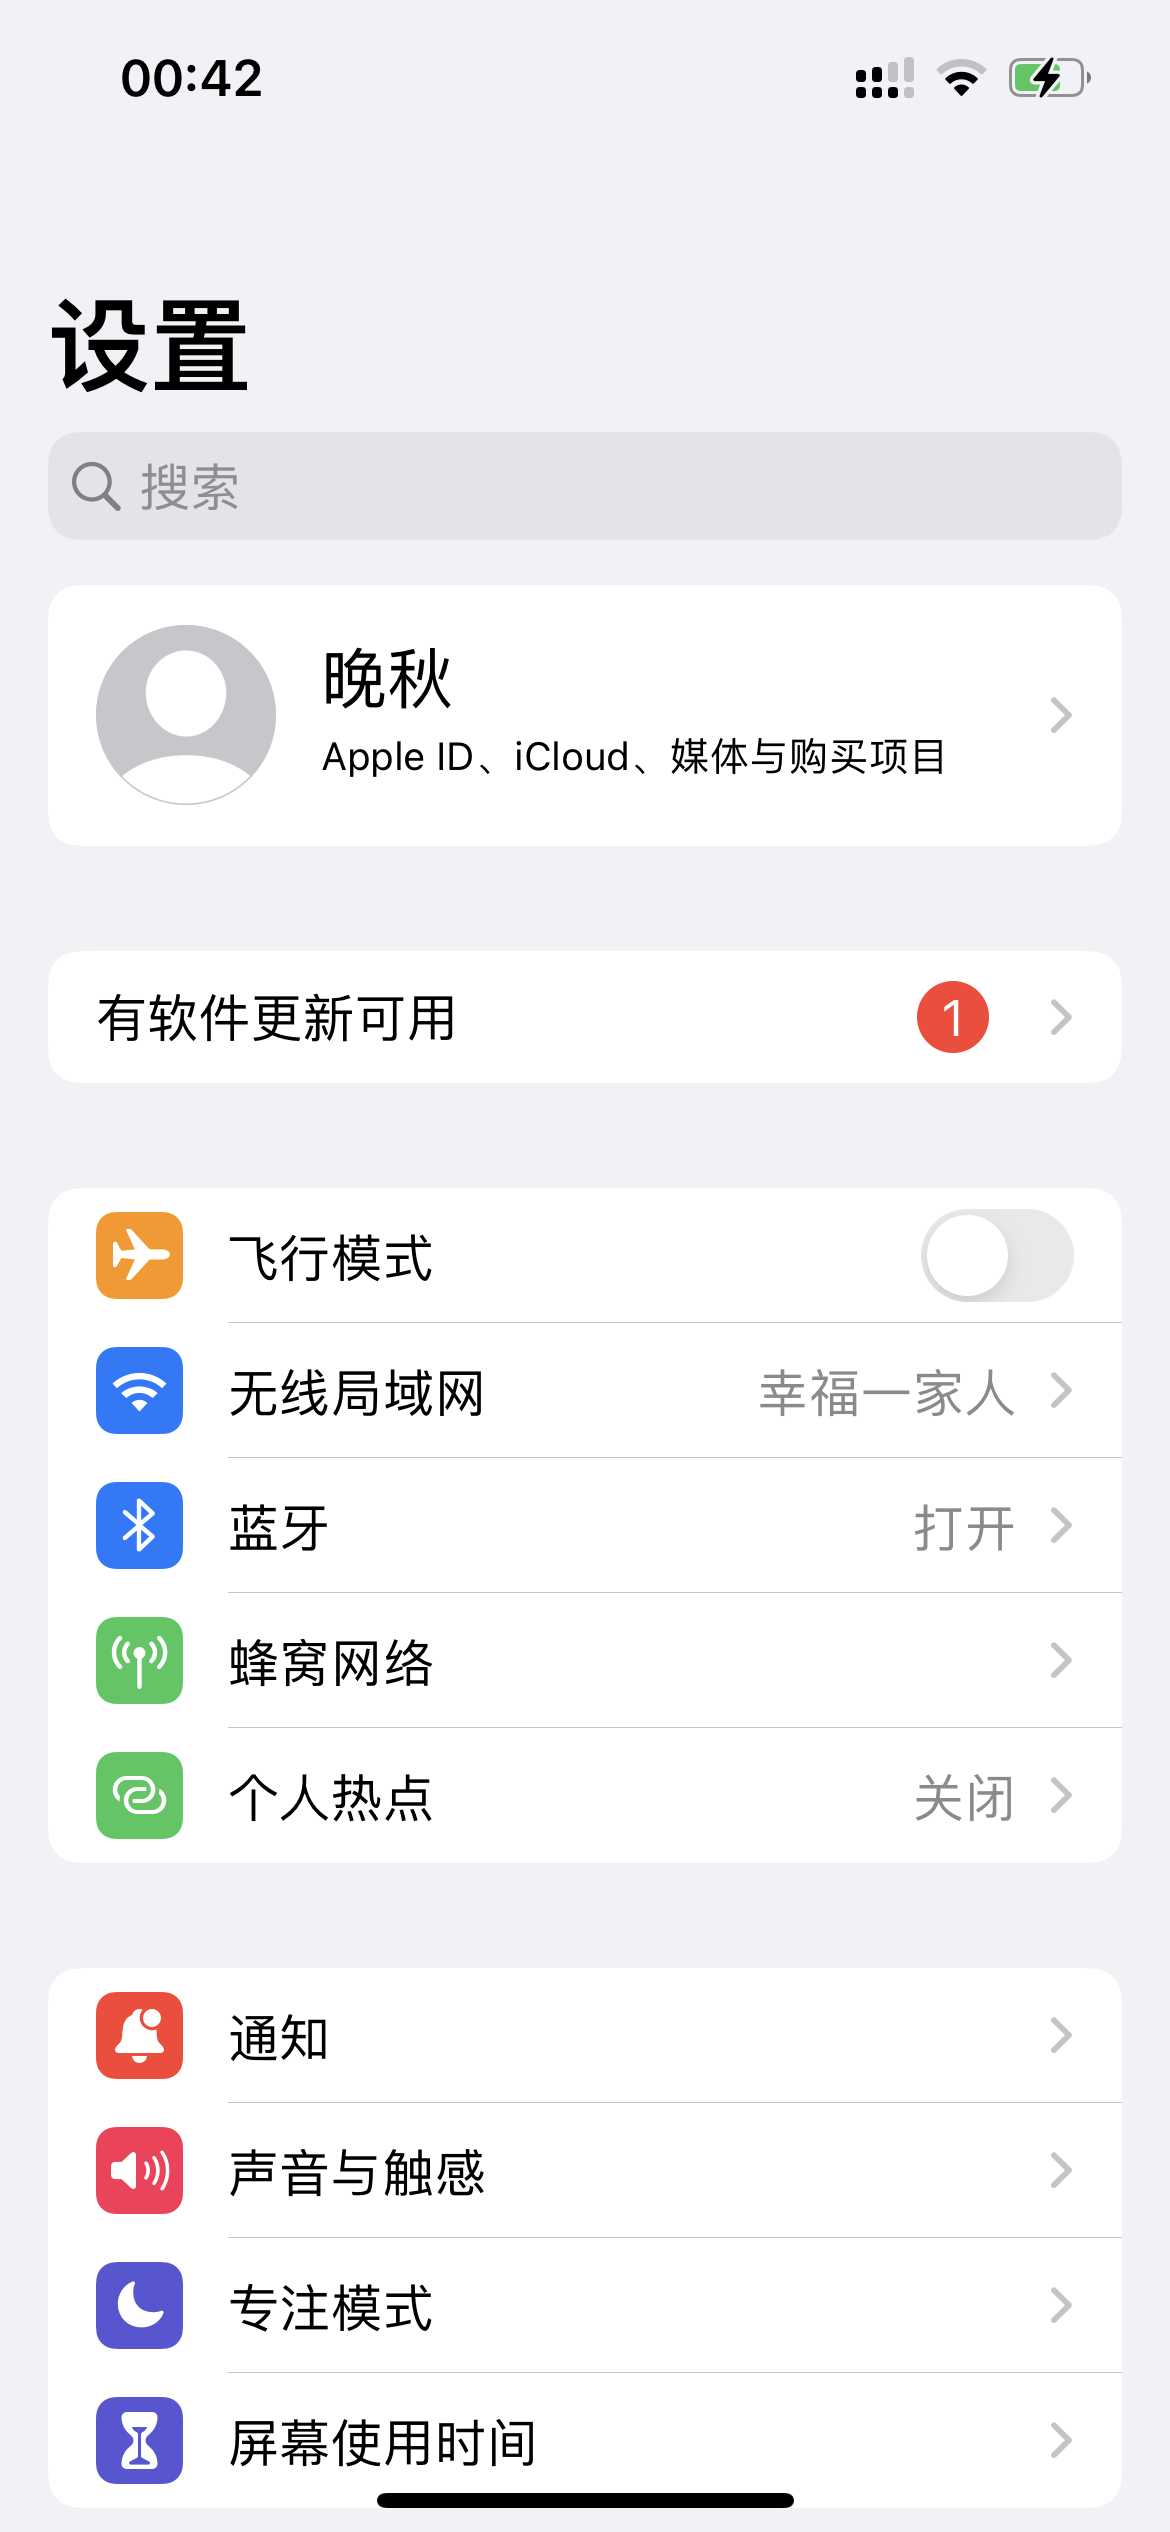 微信QQ锁屏通知不显示头像 - Apple 社区